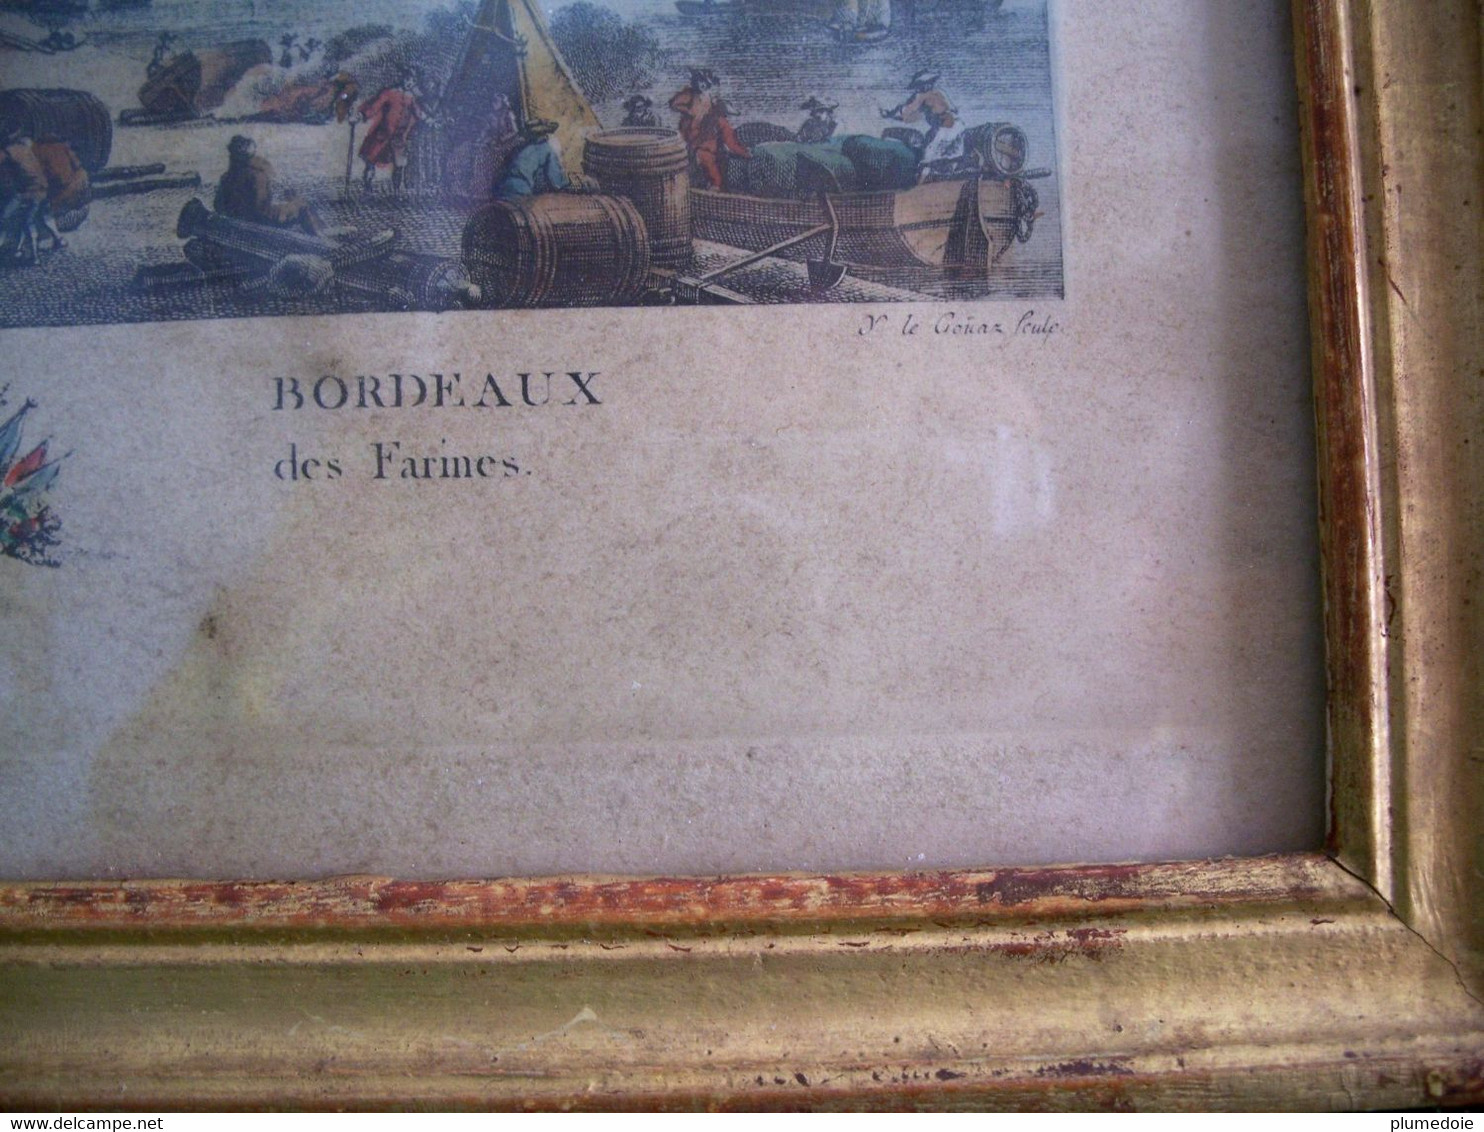 EAU FORTE couleur PORT DE BORDEAUX QUAI DES FARINES .Sous verre cadre bois doré , gravure par Y. Le Gouaz . FIN XVIII °